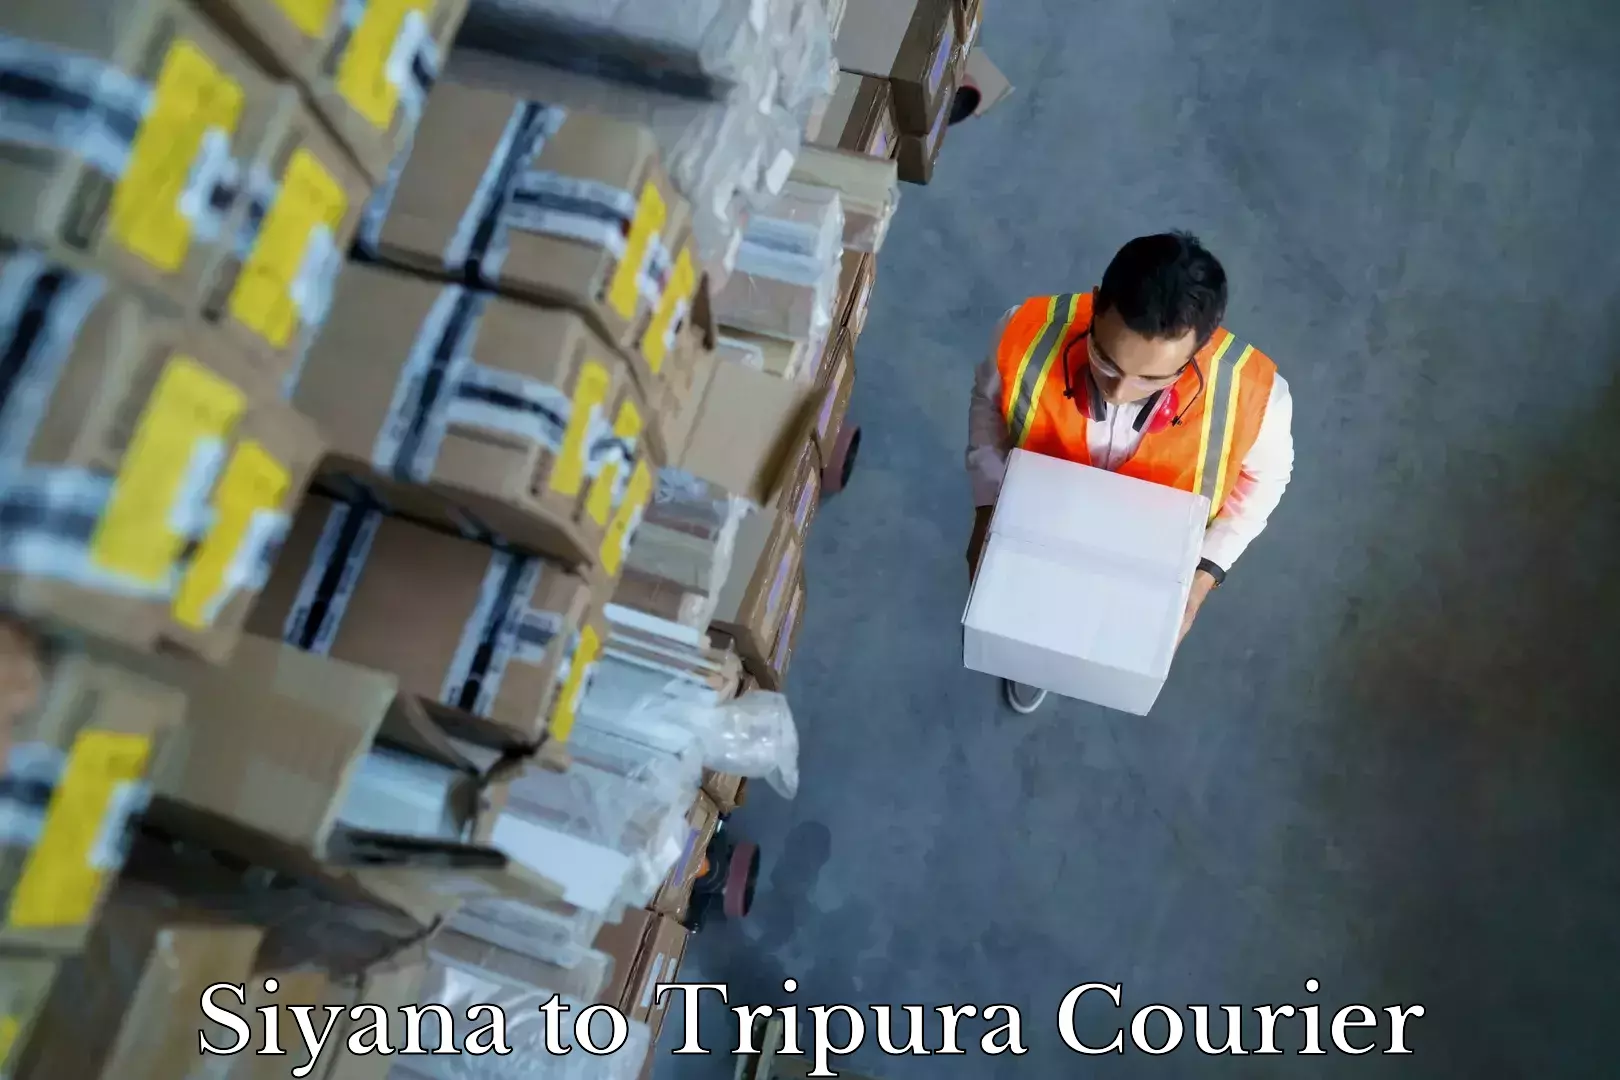 Full-service furniture transport Siyana to Tripura